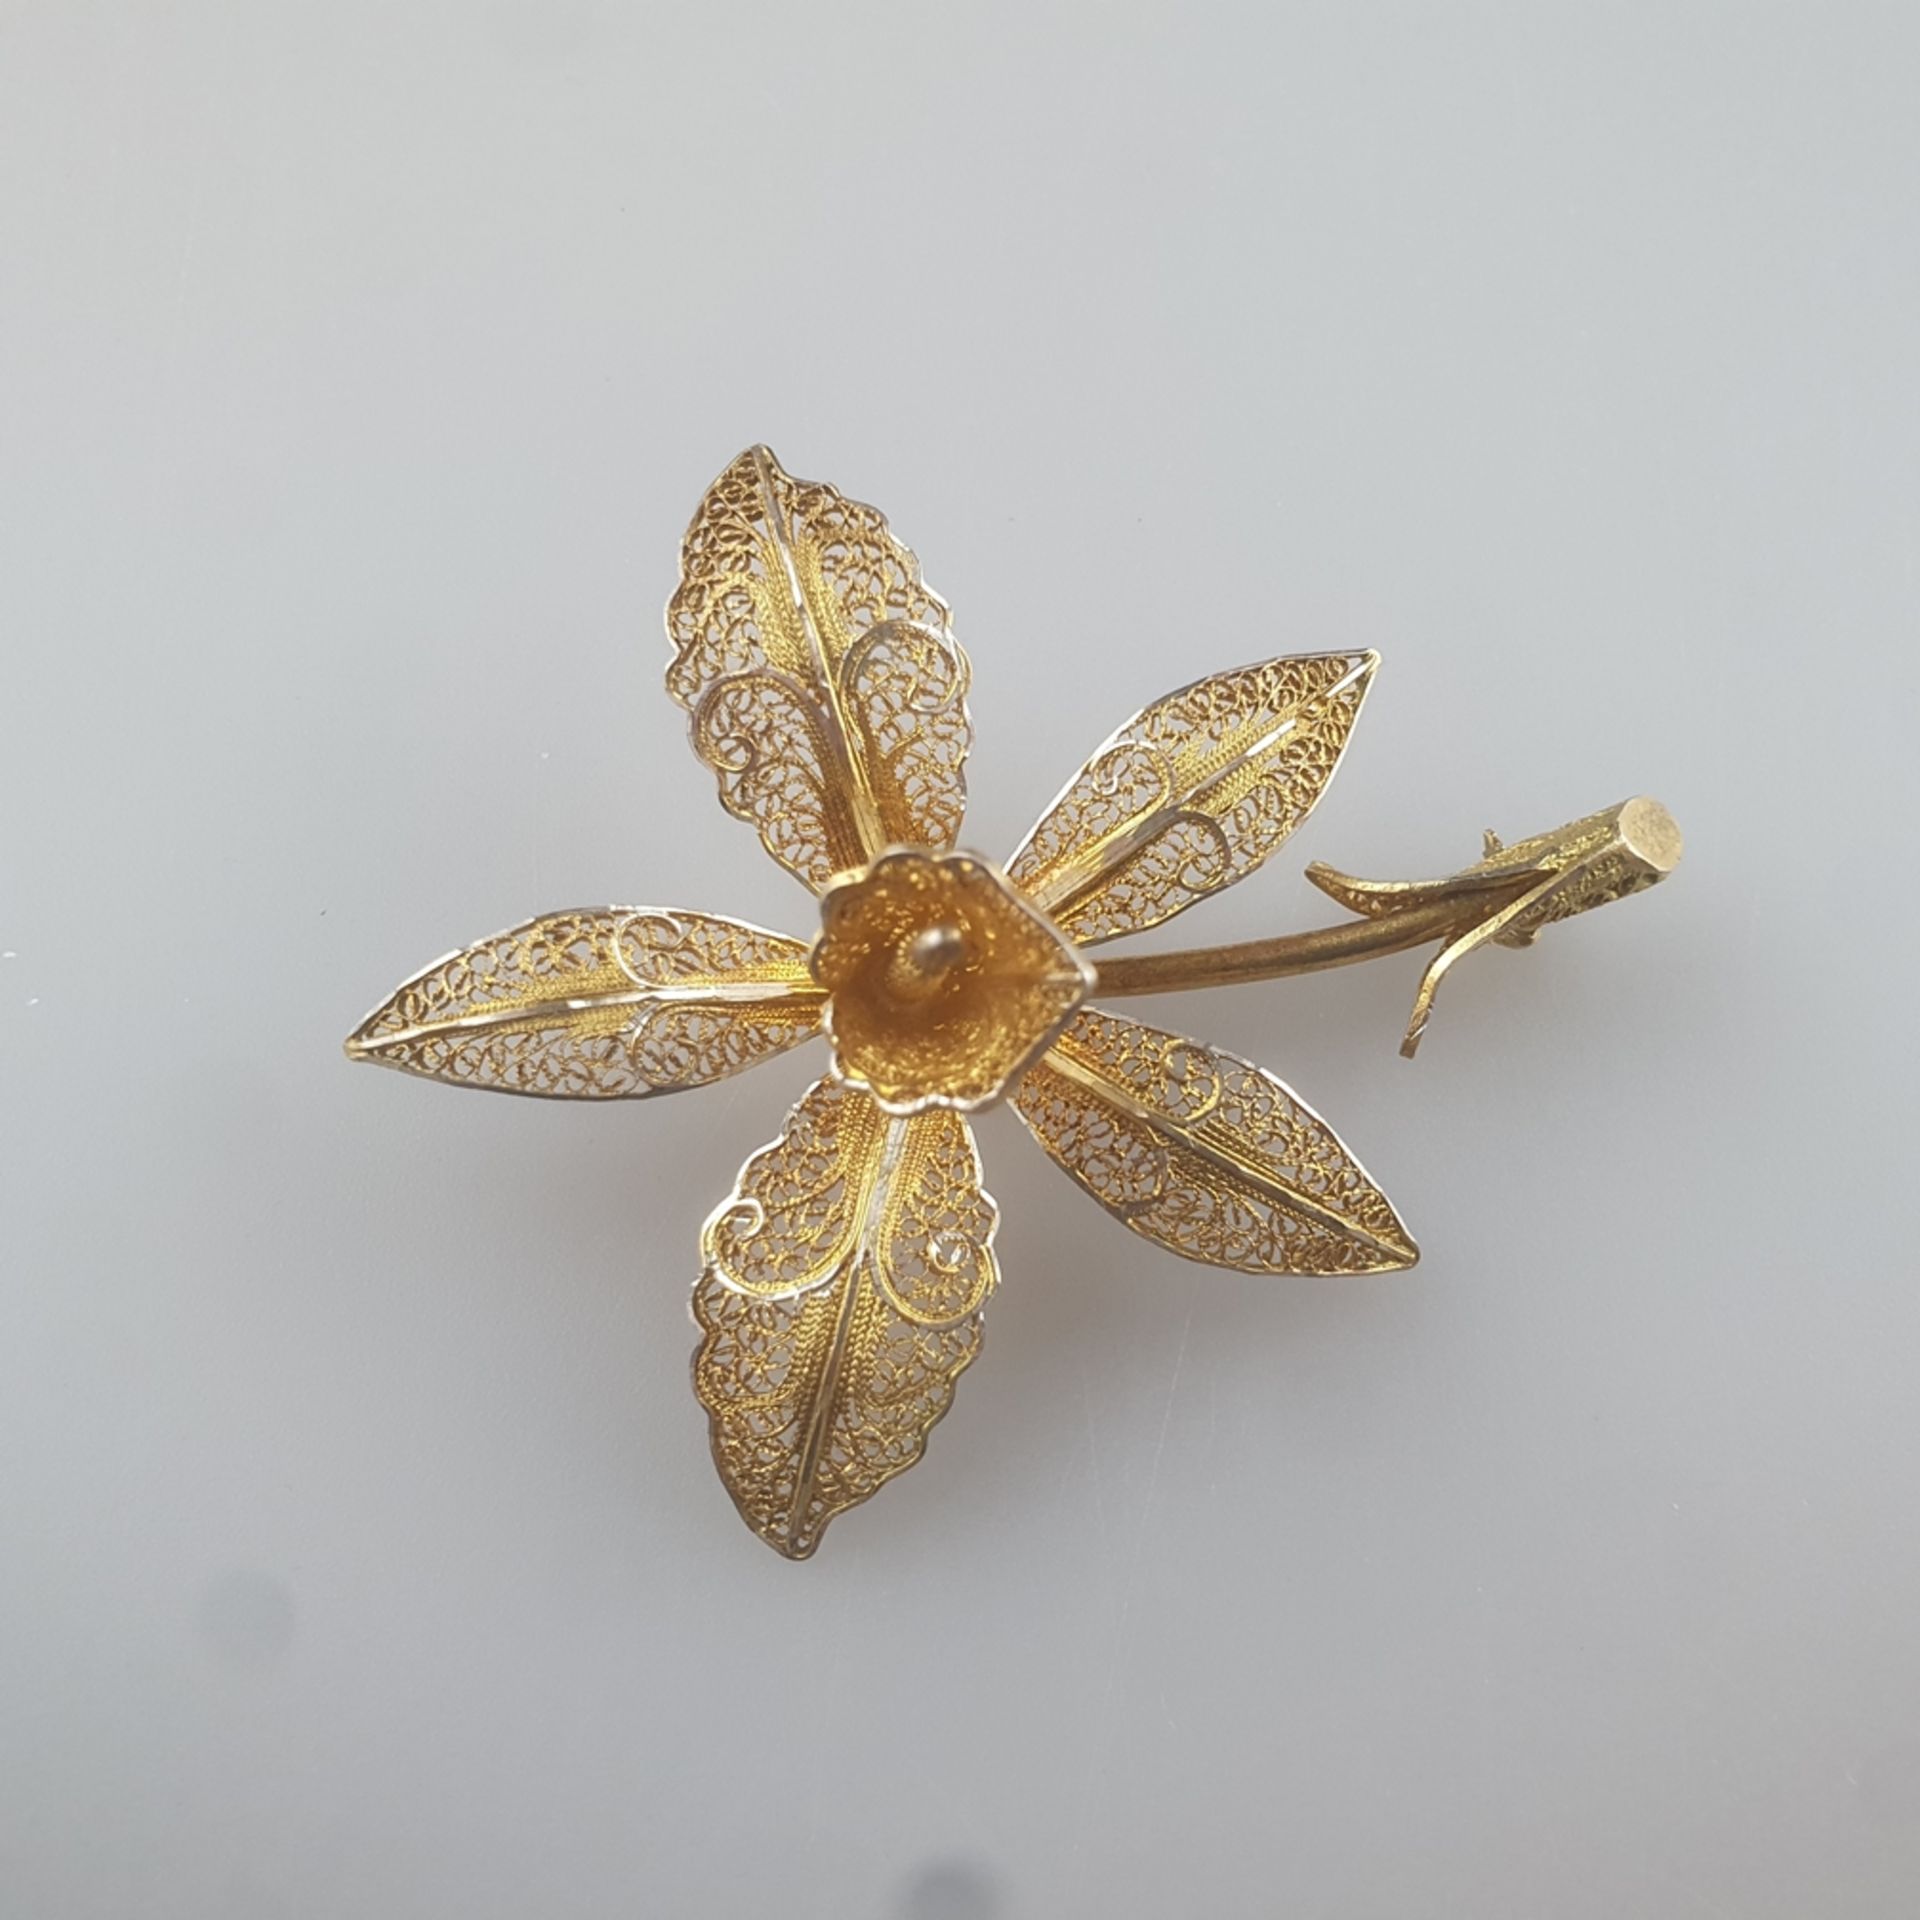 Blütenbrosche - Filigranarbeit aus Silberdraht, vergoldet, gesicherte Nadelung, Maße 6,9 x 5,5 cm, 